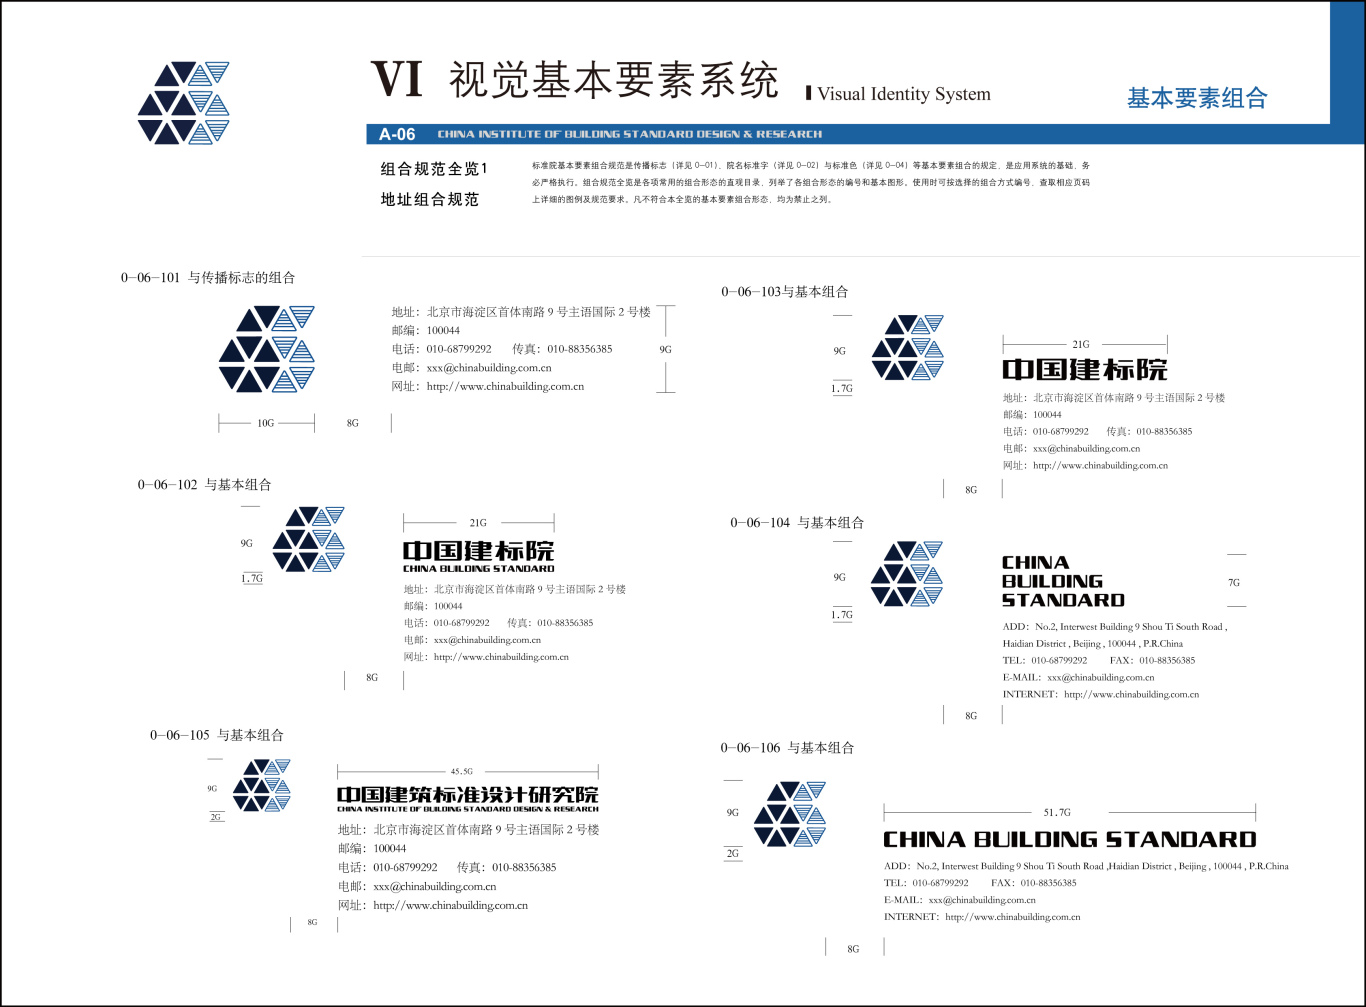 中國建筑標準設計研究院 央企VI設計圖9